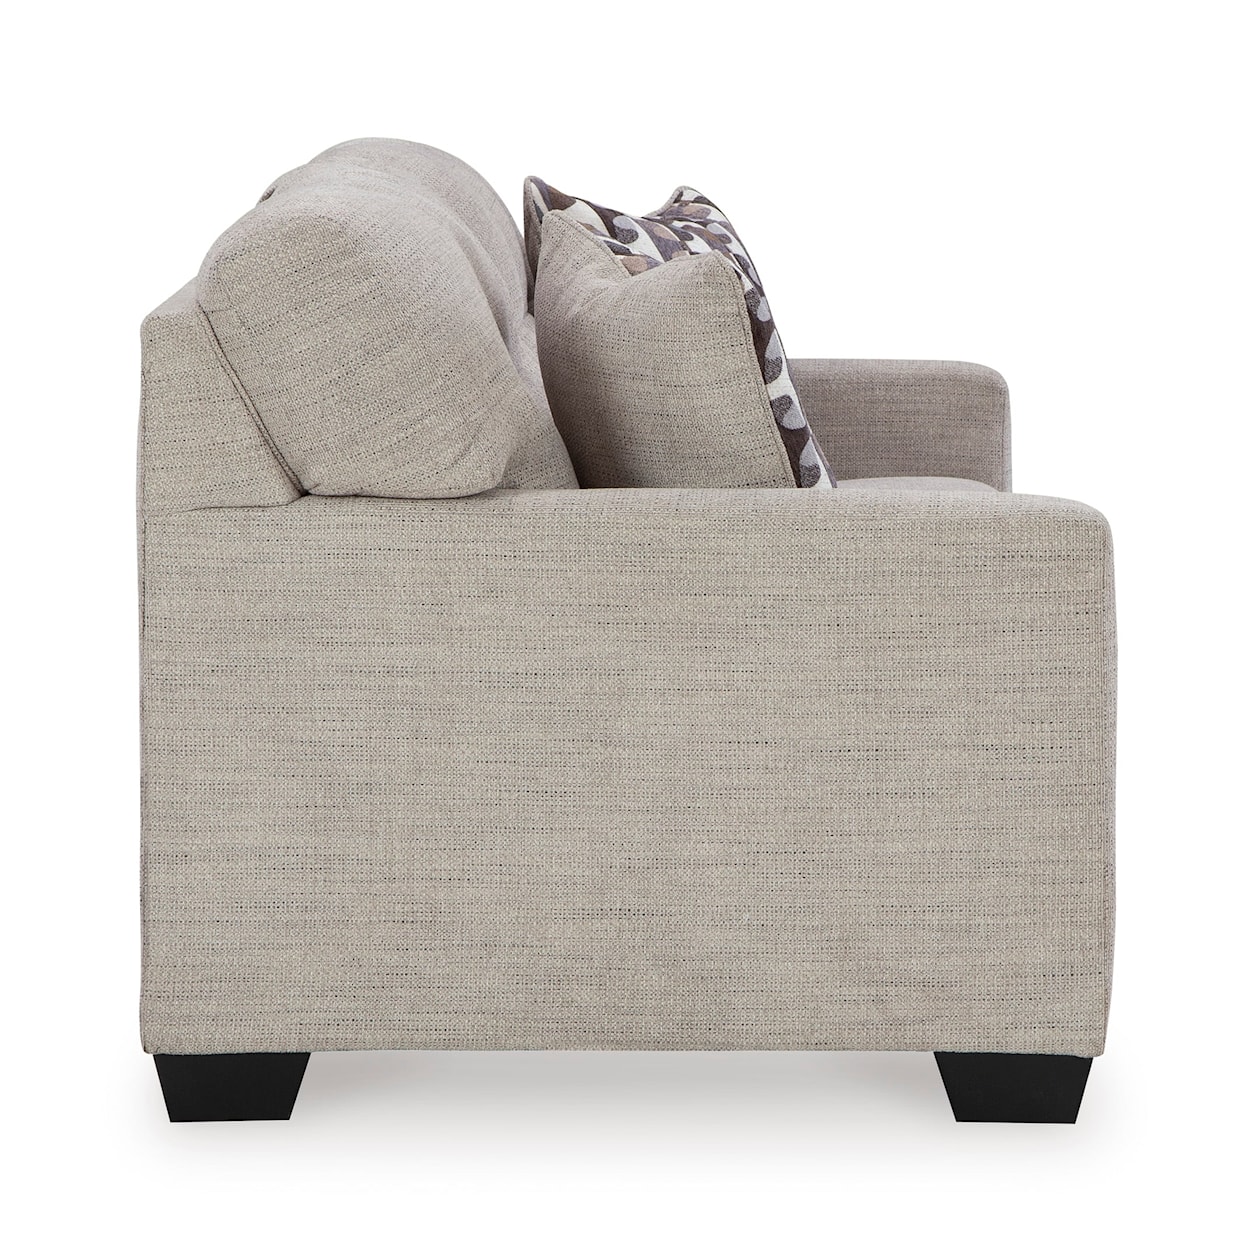 Ashley Furniture Signature Design Mahoney Sofa